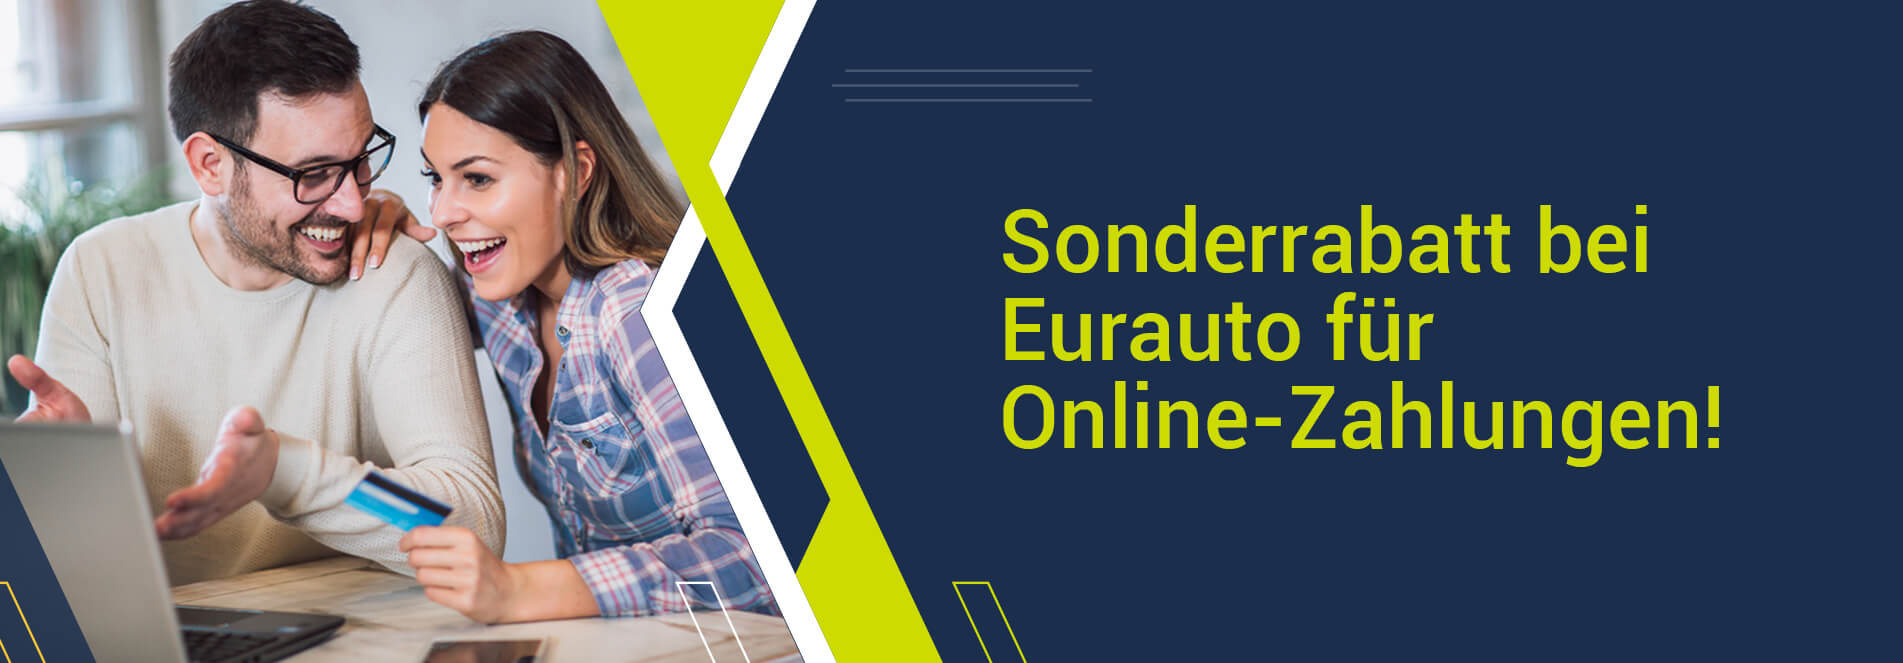 Sonderrabatt bei Eurauto für Online-Zahlungen!